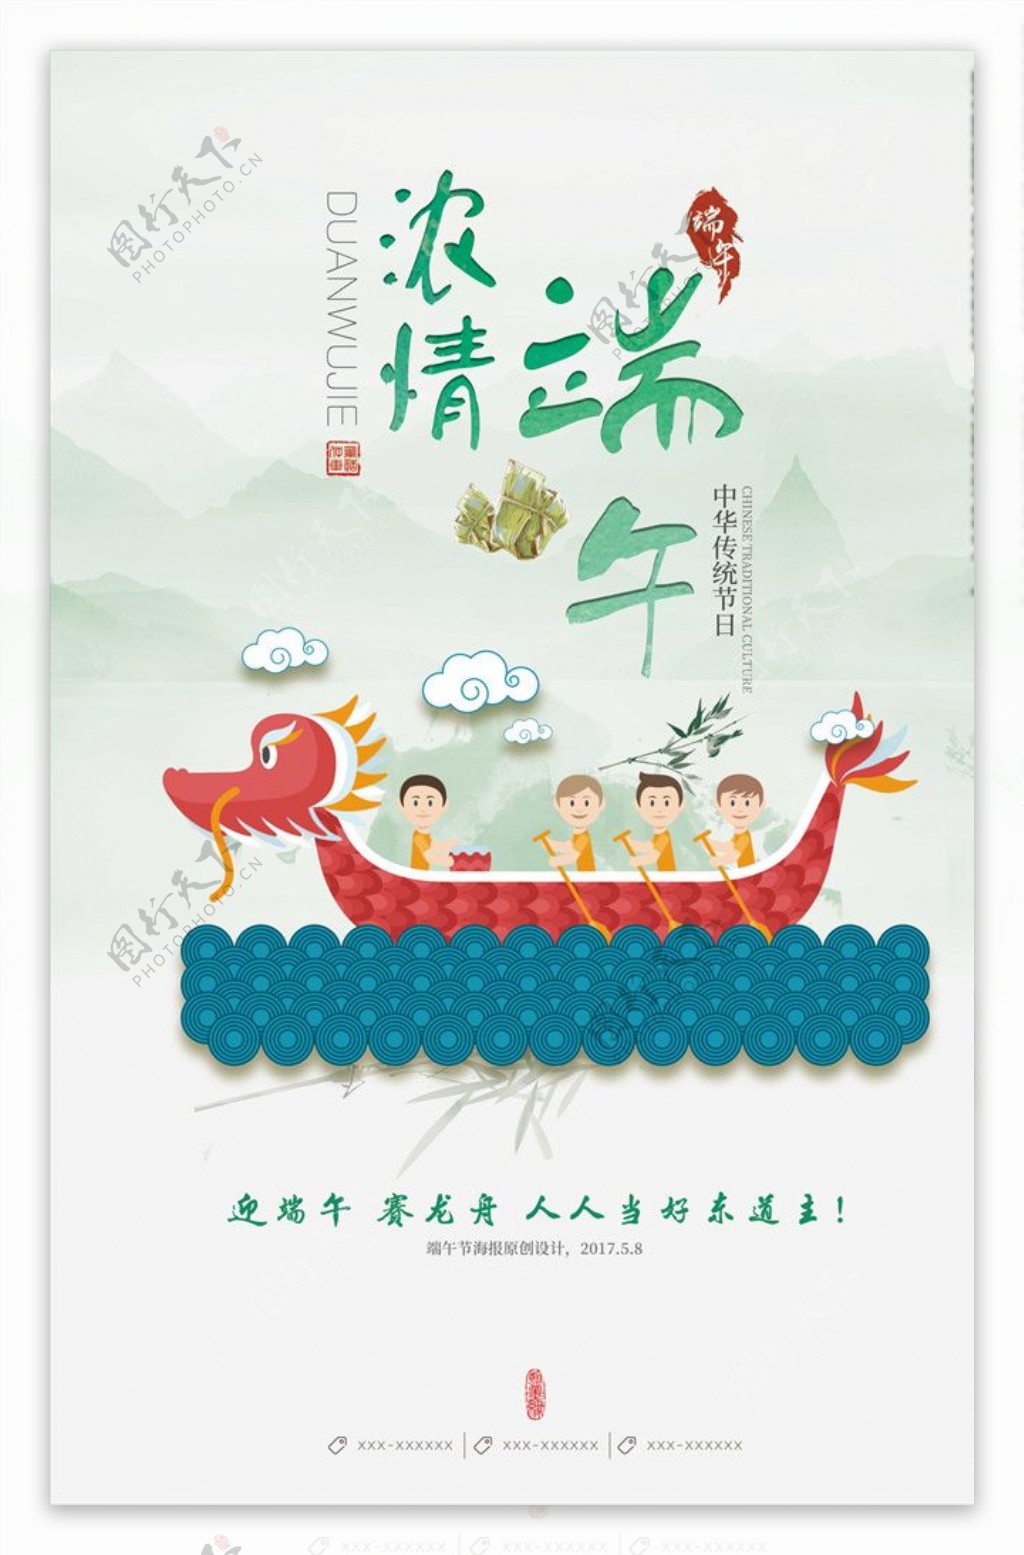 清新卡通中国风端午节海报设计